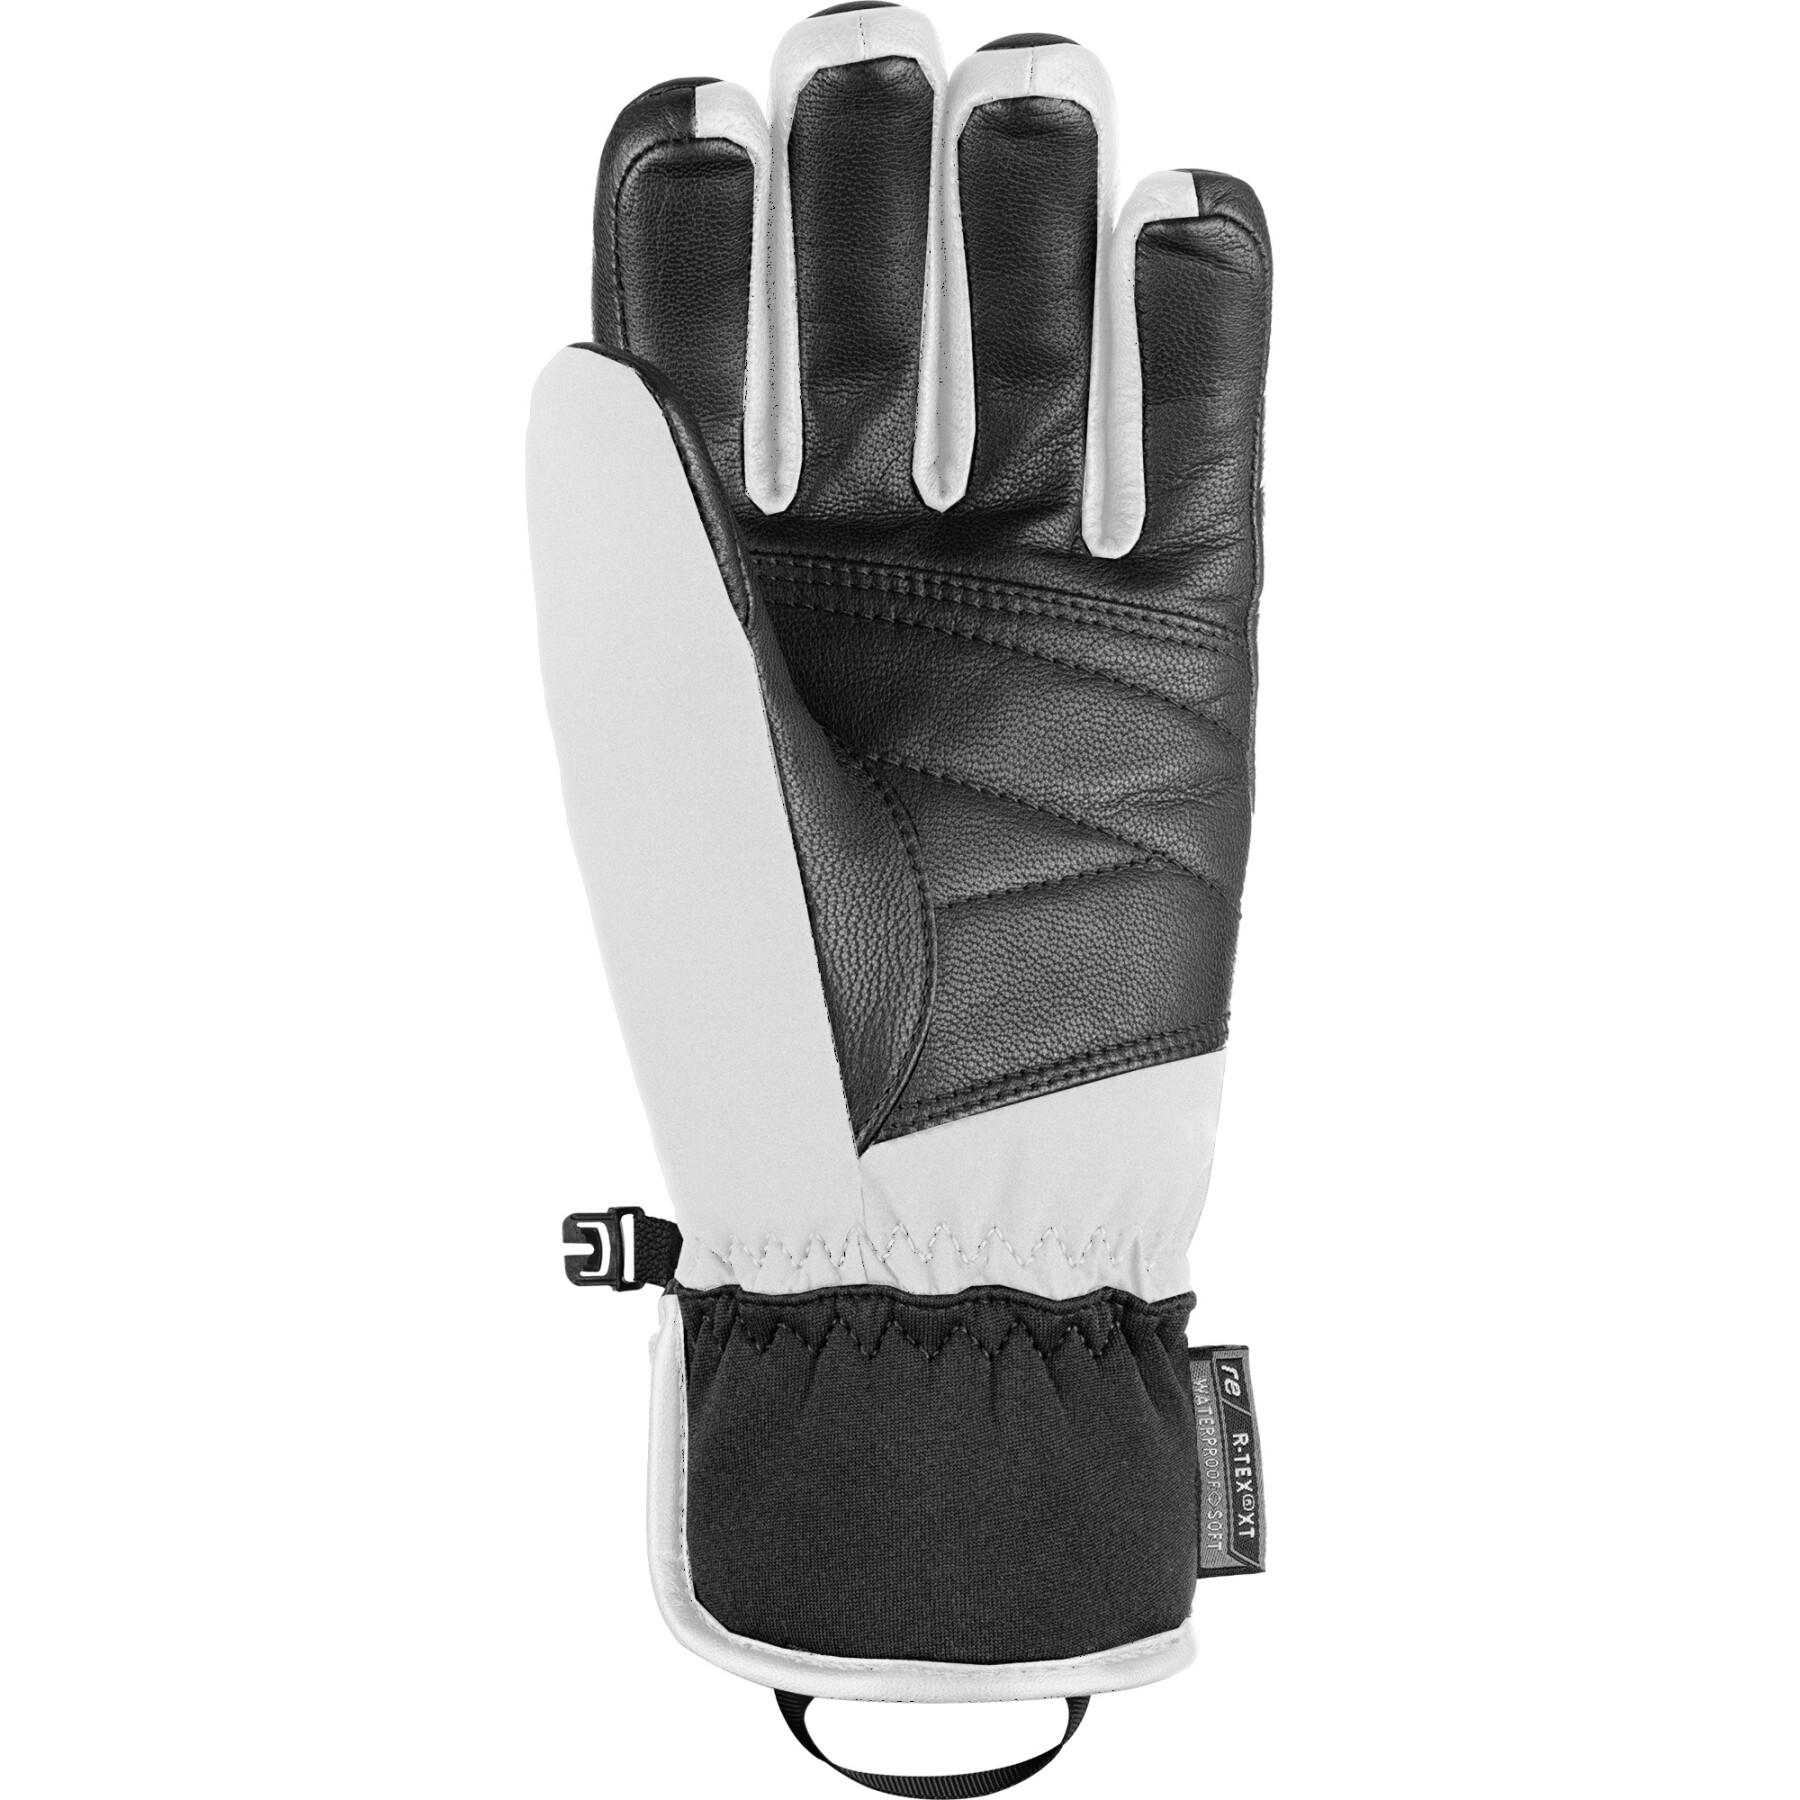 Gloves Reusch Mikaela Shiffrin R-TEX® XT